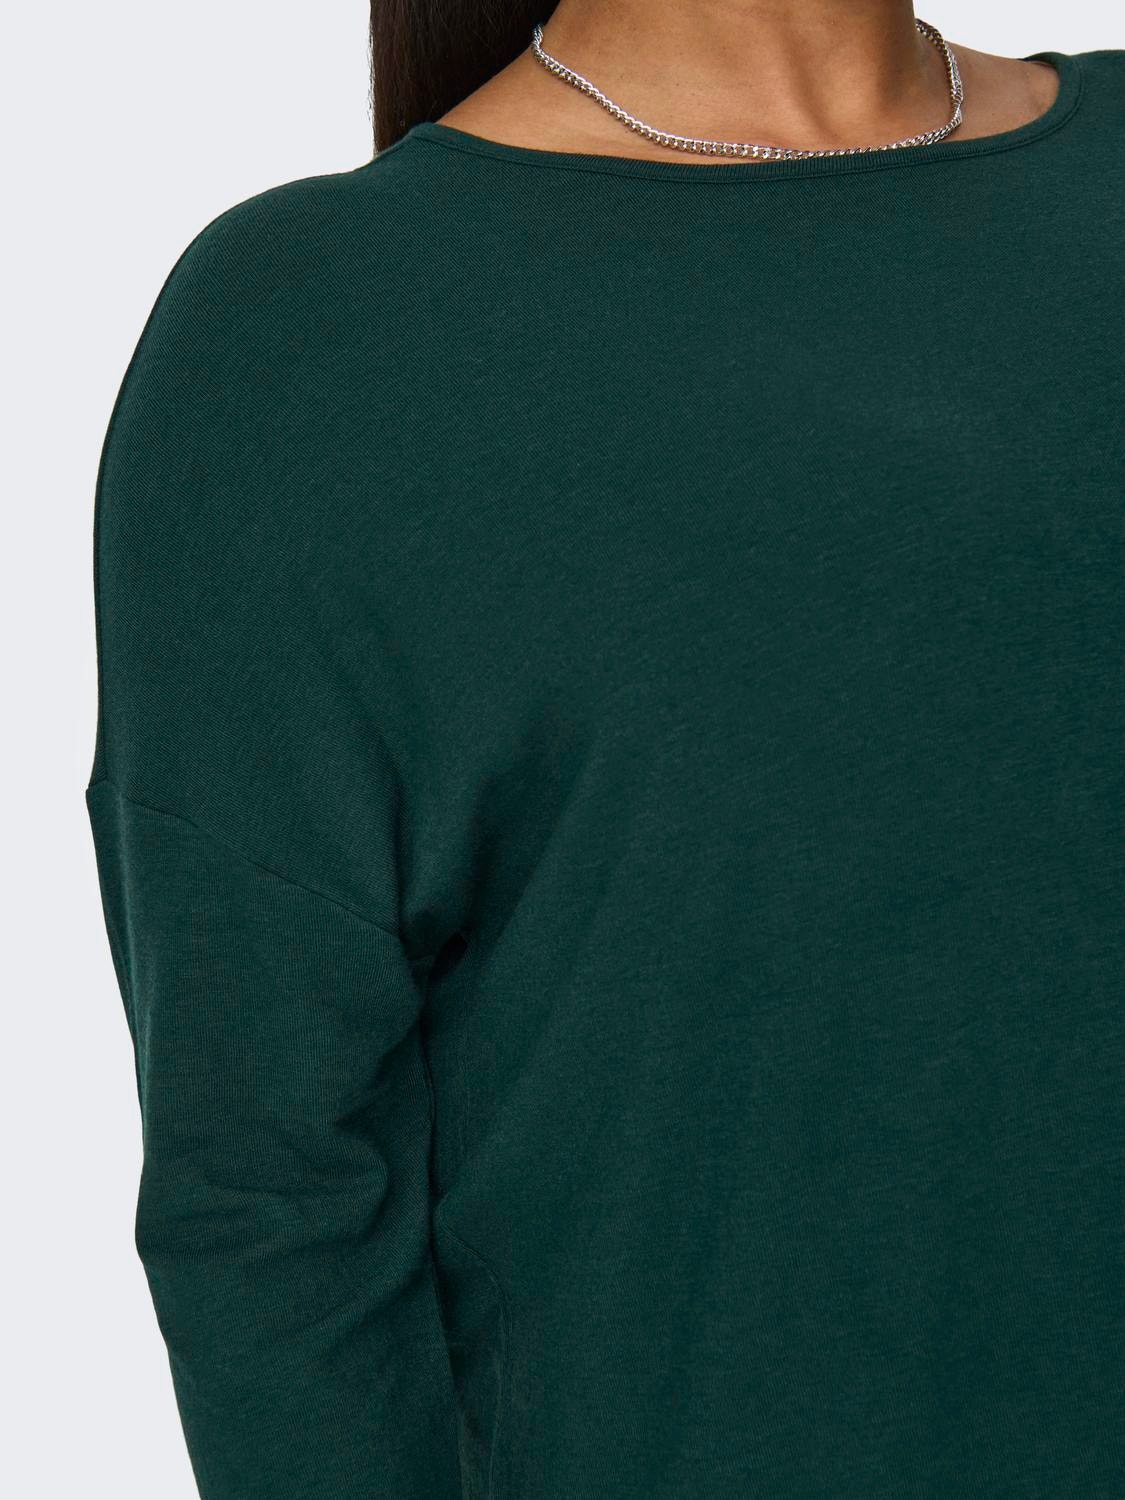 ONLY Holgada en tallas grandes Camiseta 3/4 -Green Gables - 15229806